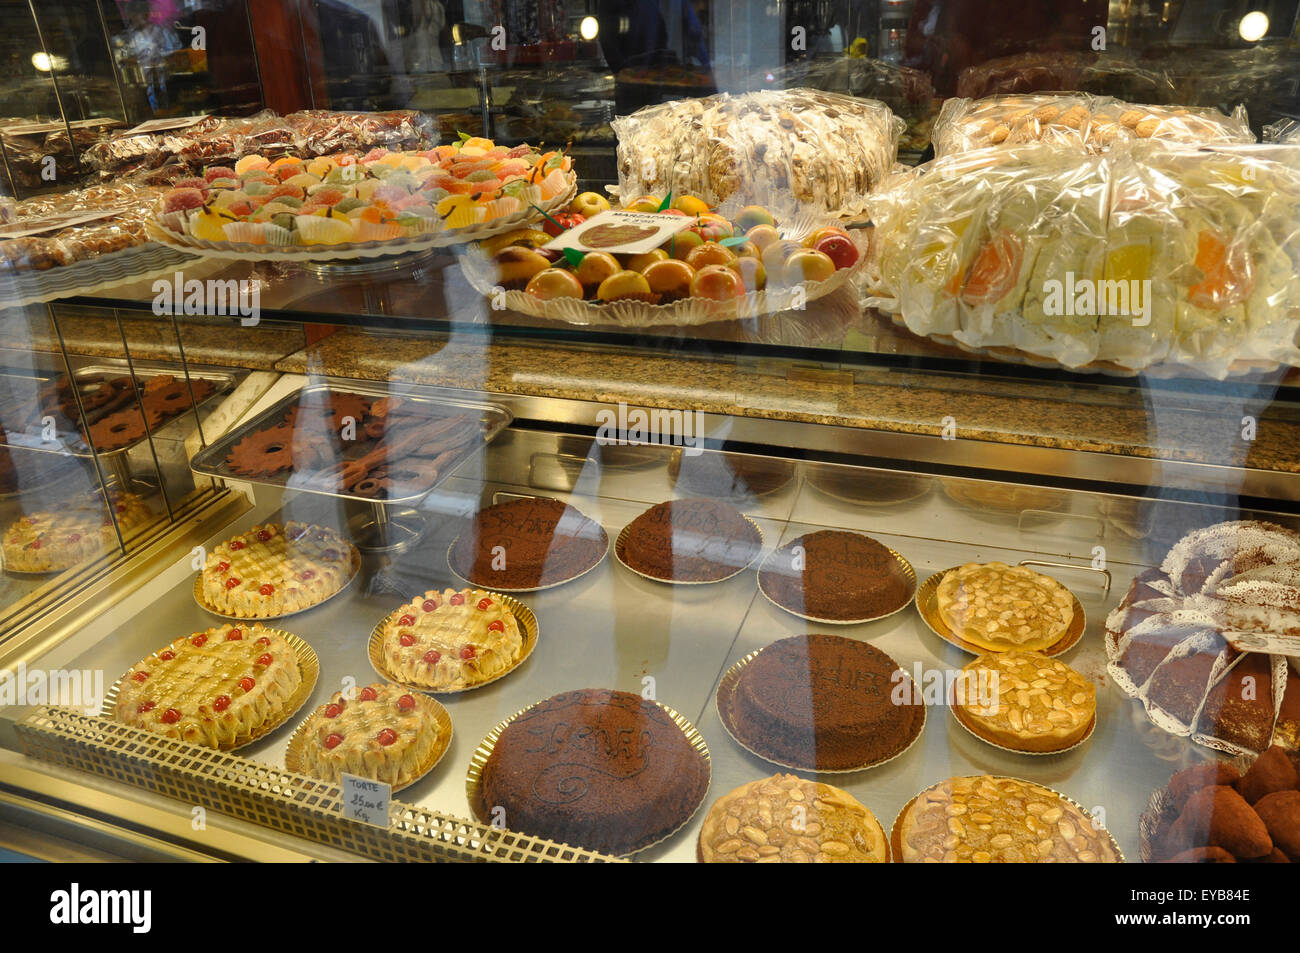 Italien - Venedig - Cannaregio Region - Bäcker einkaufen - Kuchen - Torten - Marzipan Früchte - Mund Bewässerung Schaufenster Stockfoto